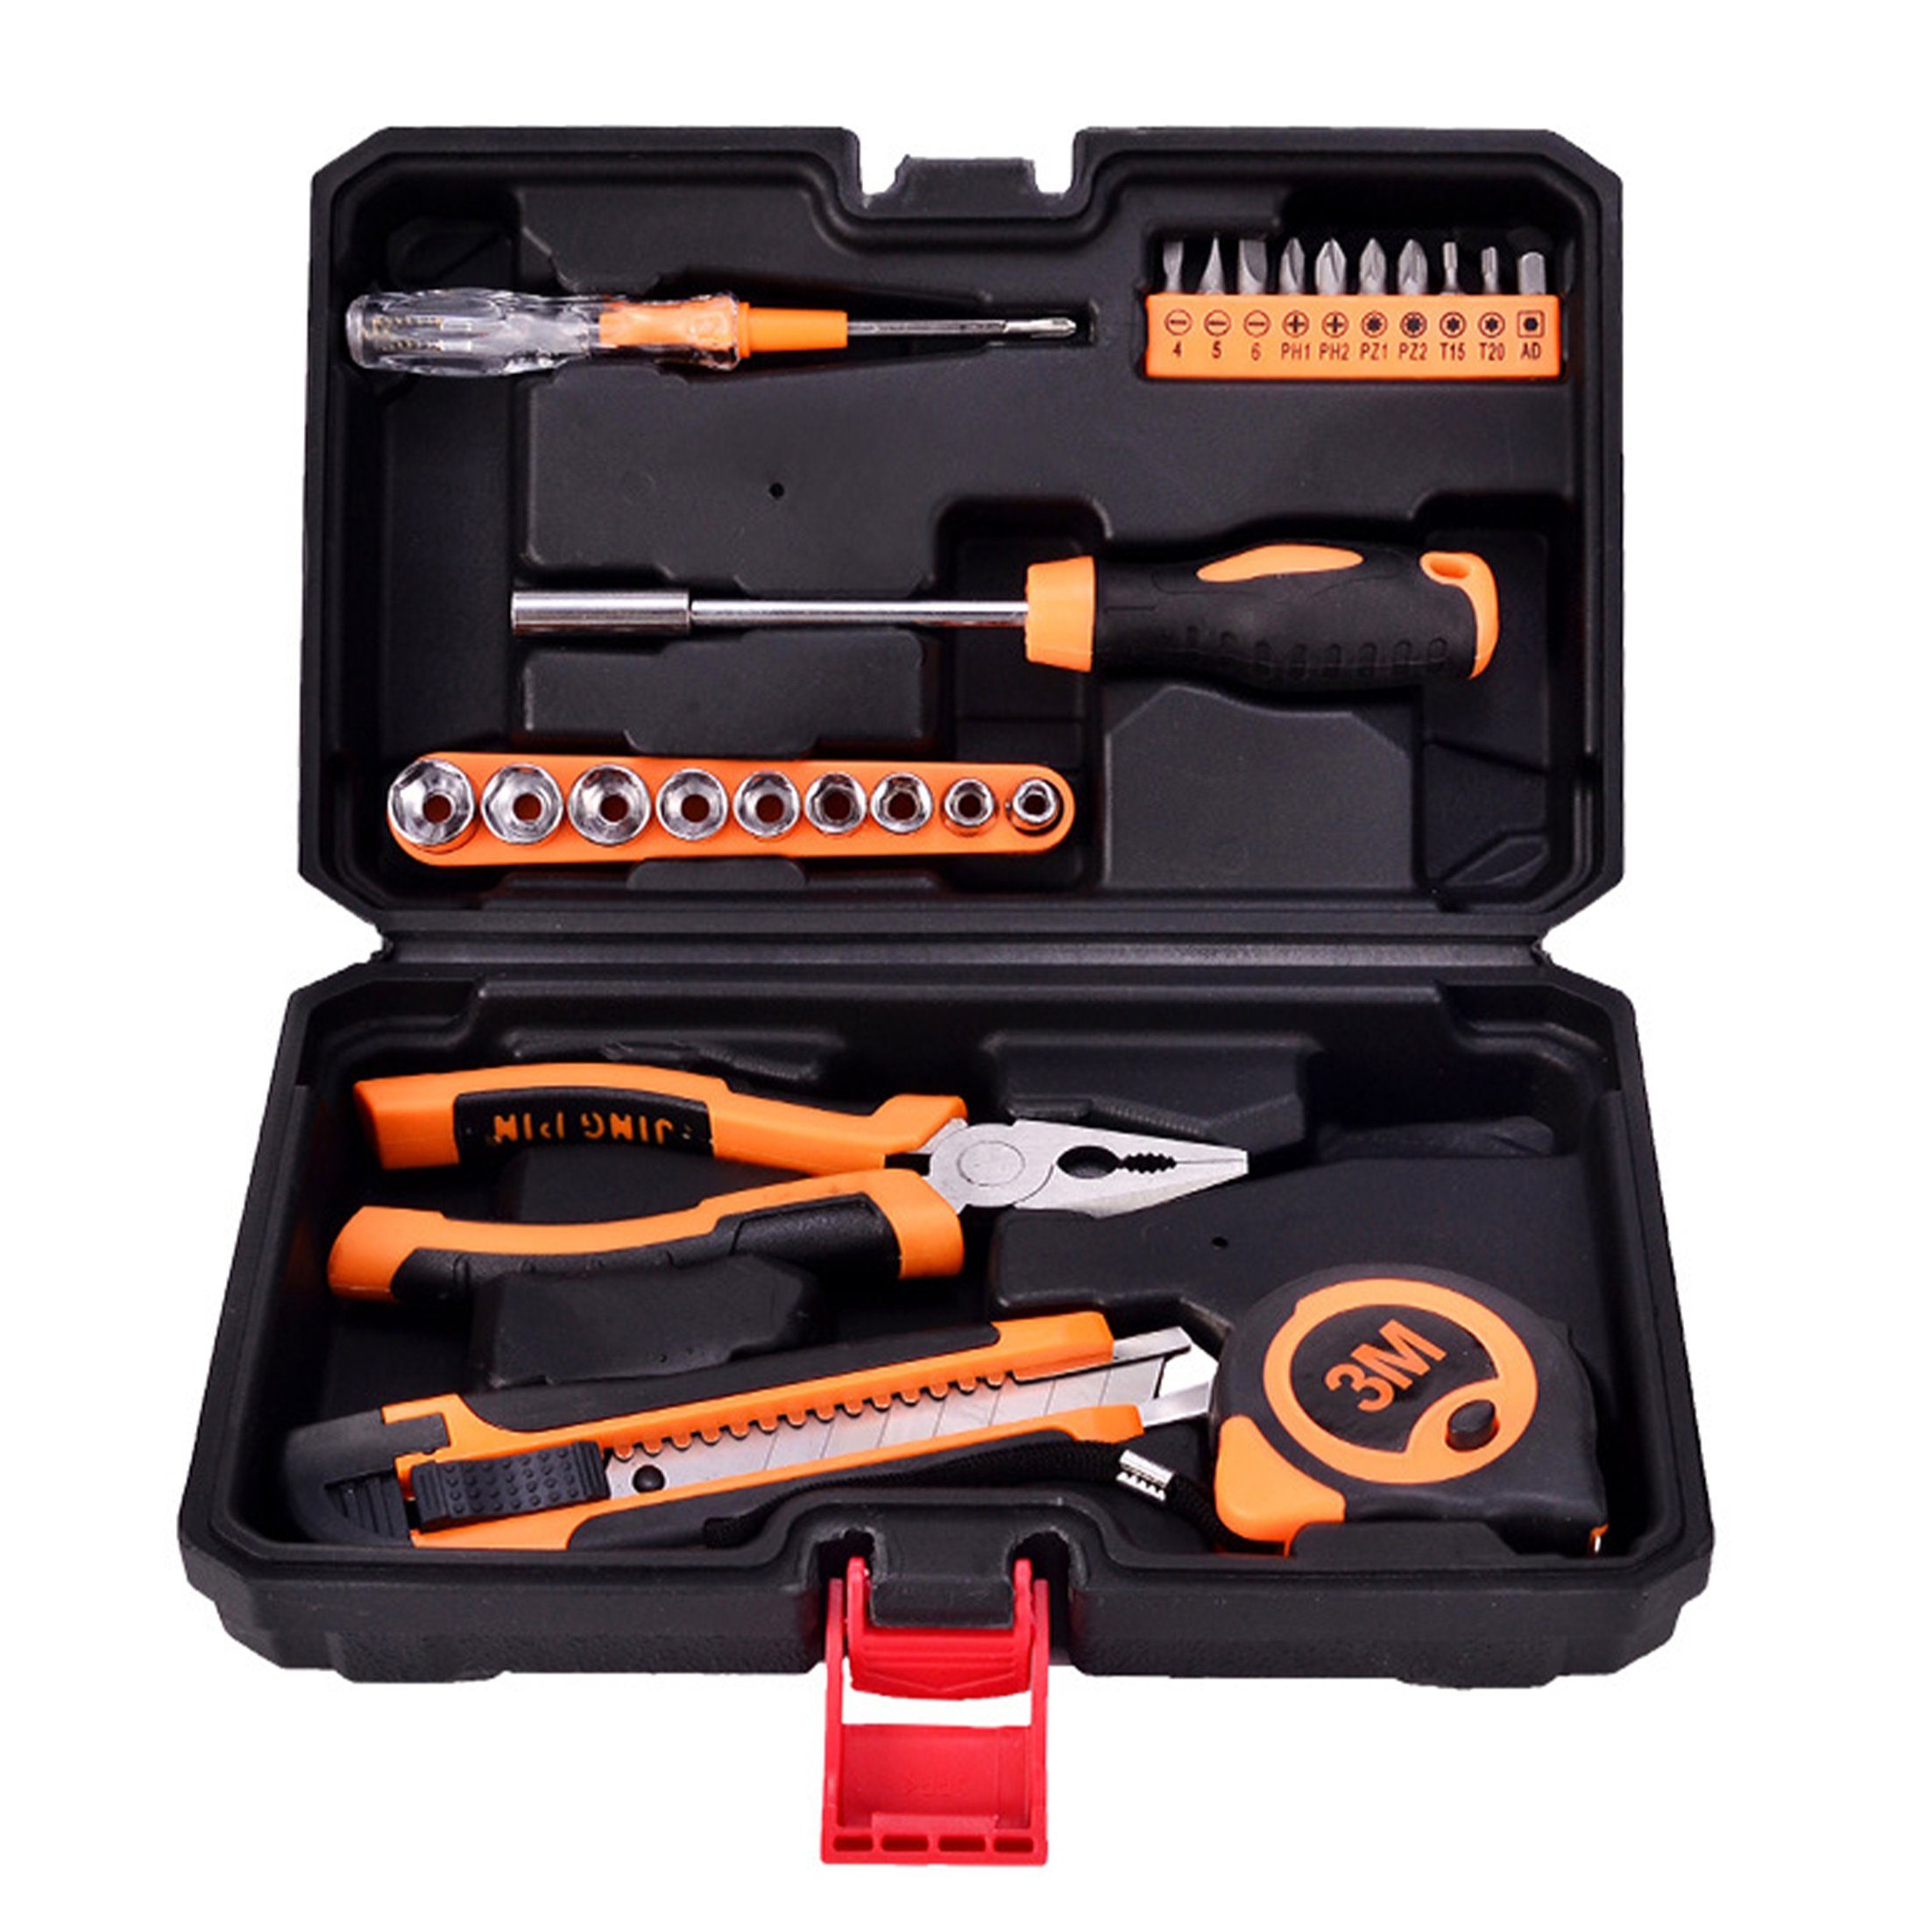 Dedom Werkzeugkoffer Werkzeugkoffer, 24-teiliges/18-teiliges Set, Handwerkzeugsatz, Reparaturwerkzeug, Multitool-Set für den Hausgebrauch